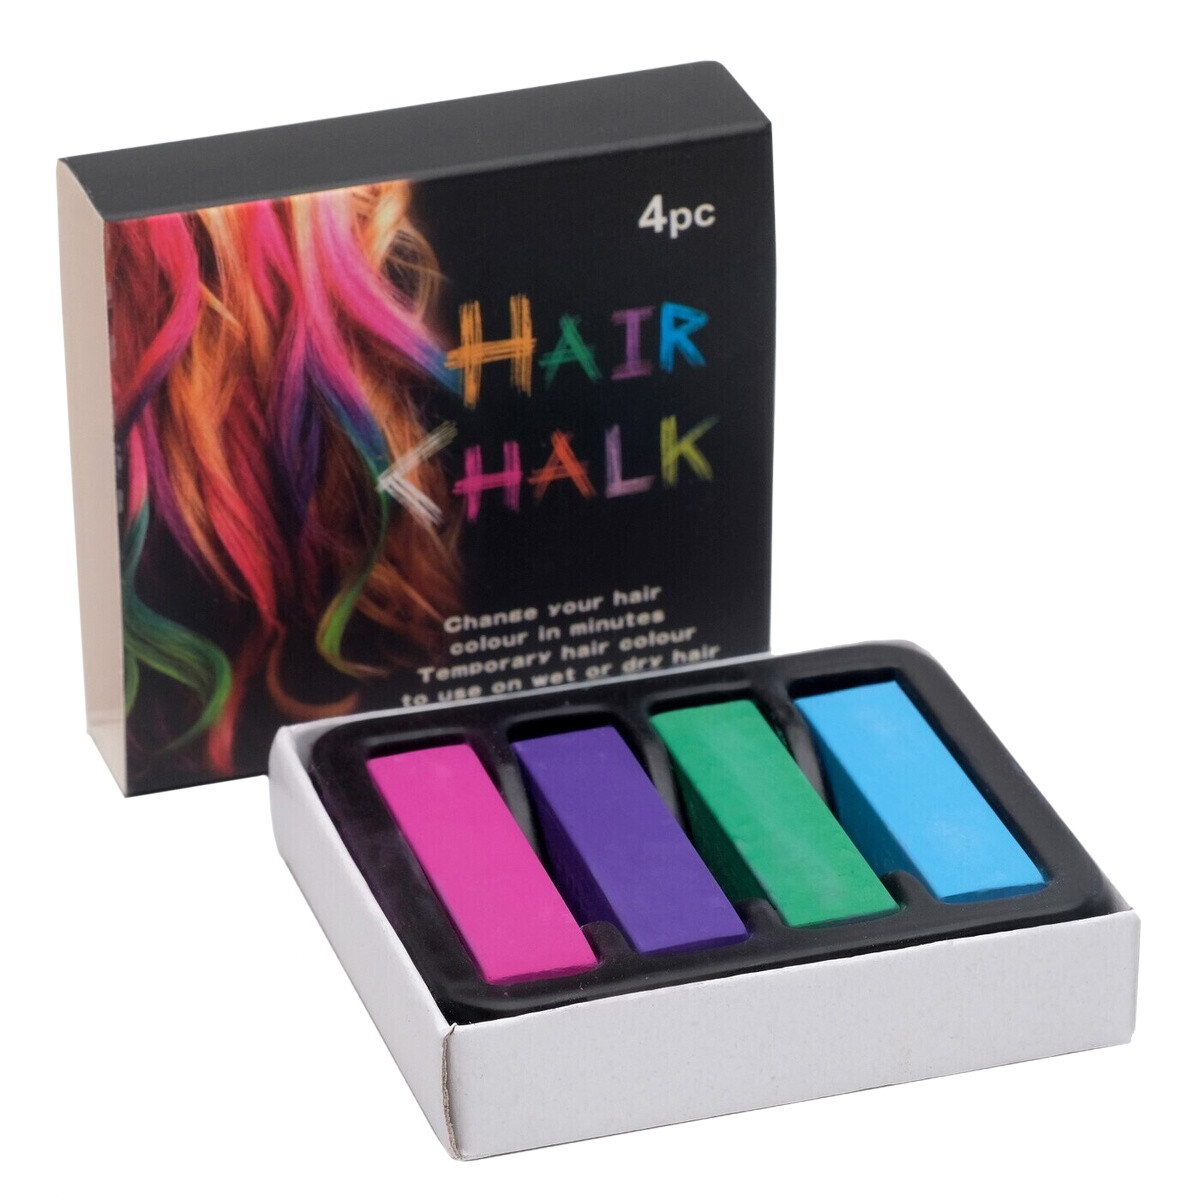 Цветные мелки для волос HairChalkin, набор 4 штук мелки ные смешарики нюша и бараш в наборе 6 штук квадратные